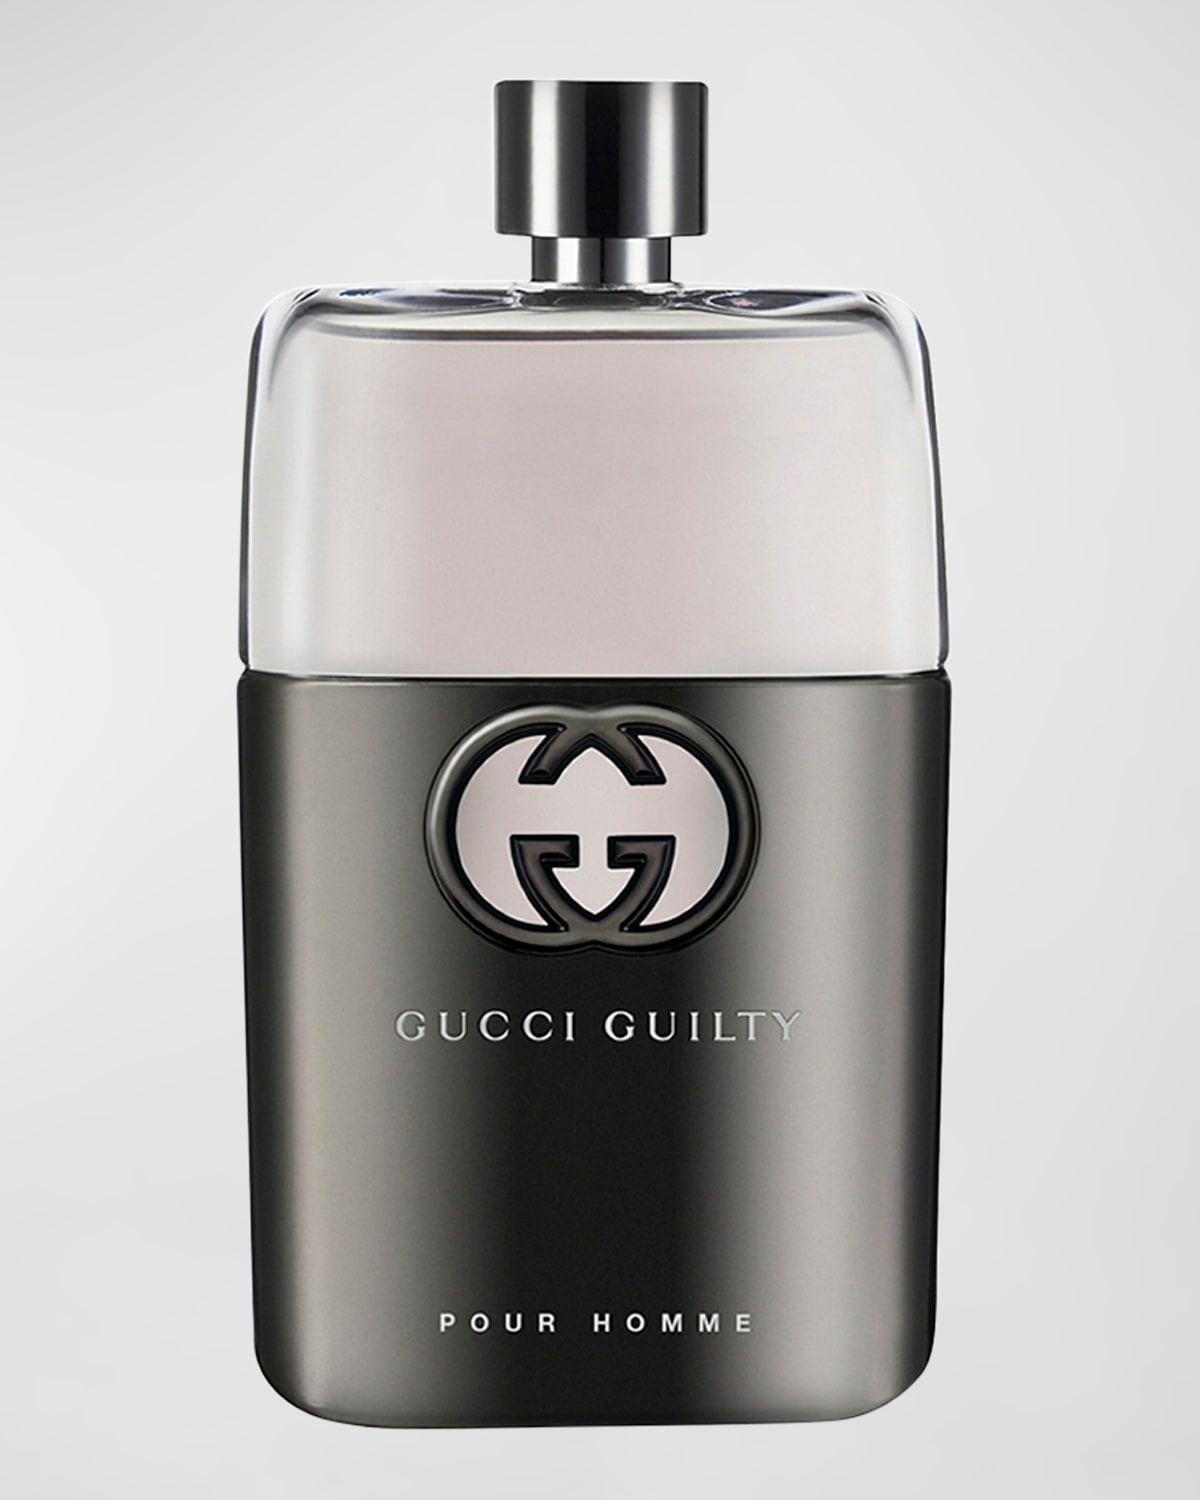 Gucci 3 oz. Guilty Pour Homme Eau de Toilette